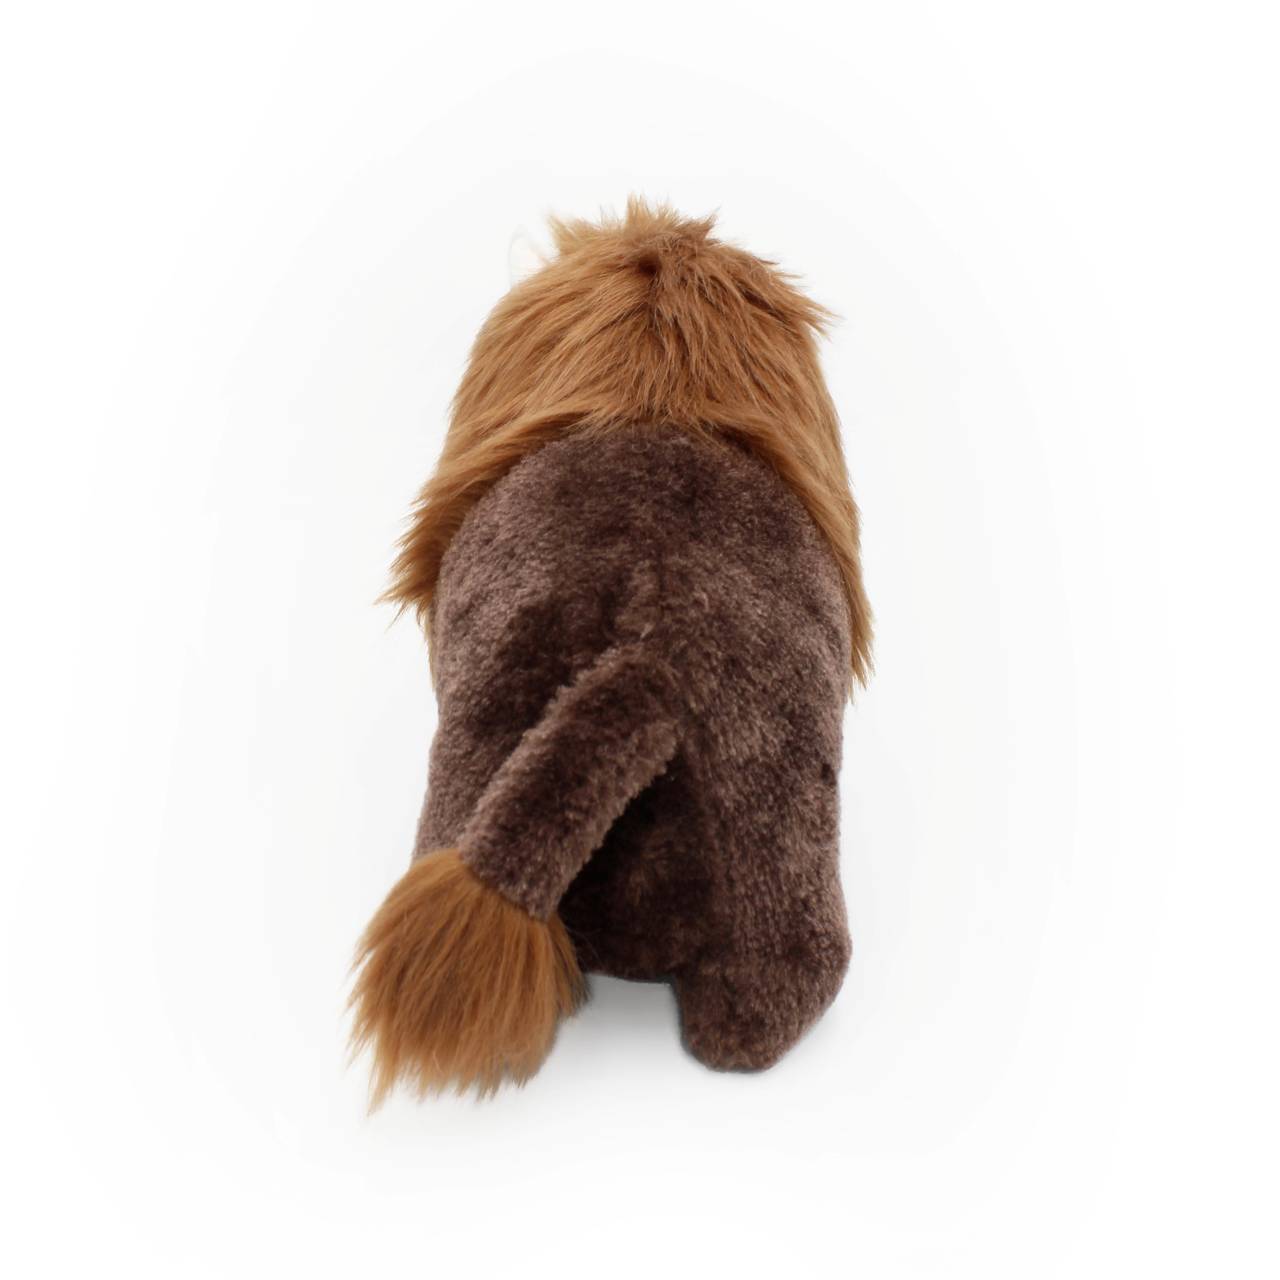 Zippy Paws Wooliez Plush Squeaker Dog Toy - Billie the Bison  image 2